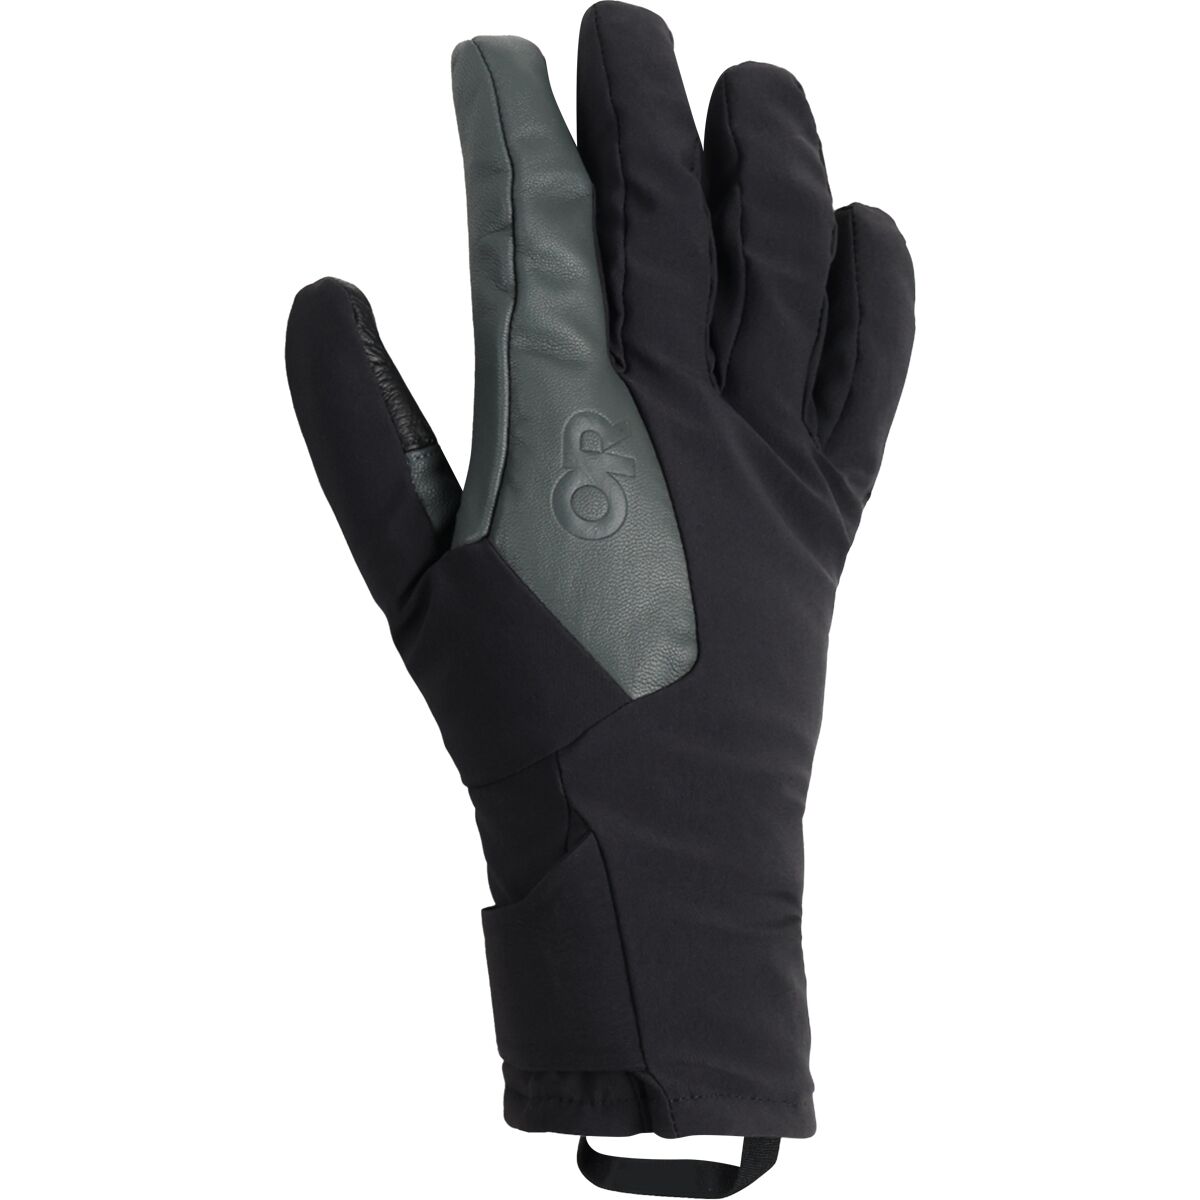 Outdoor Research Sureshot Pro Glove - Men's Black